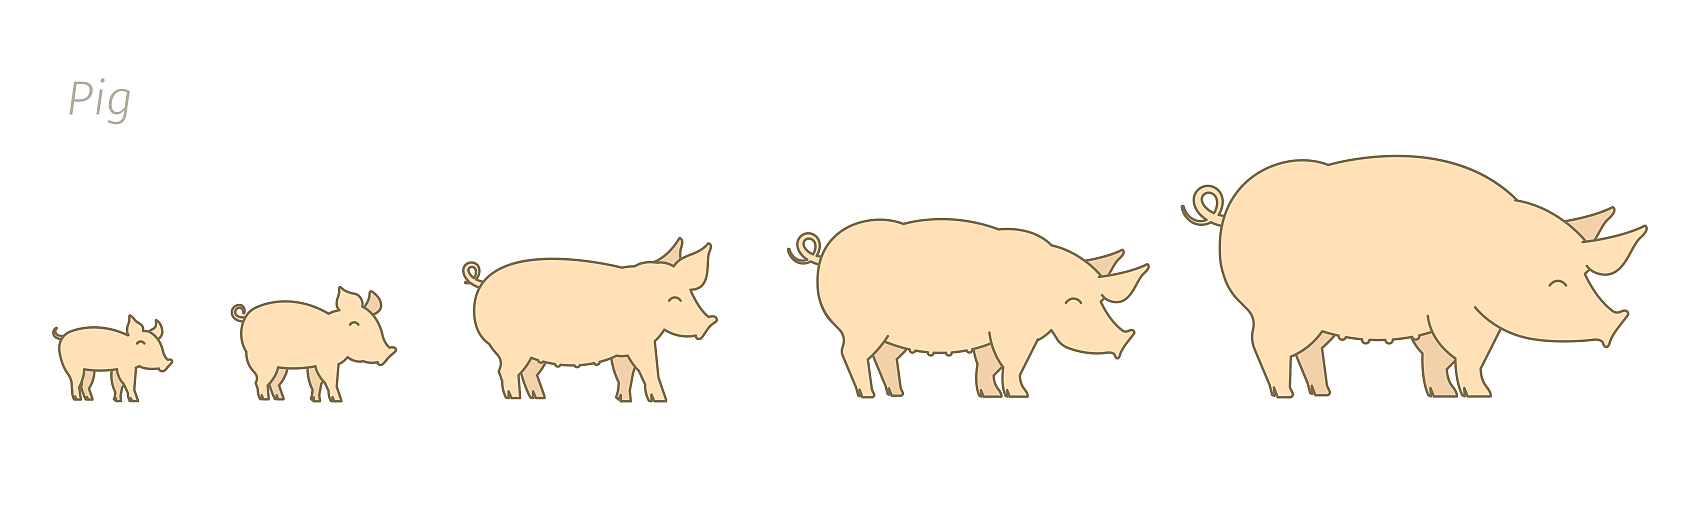 Cerdos en diferentes etapas de crecimiento.